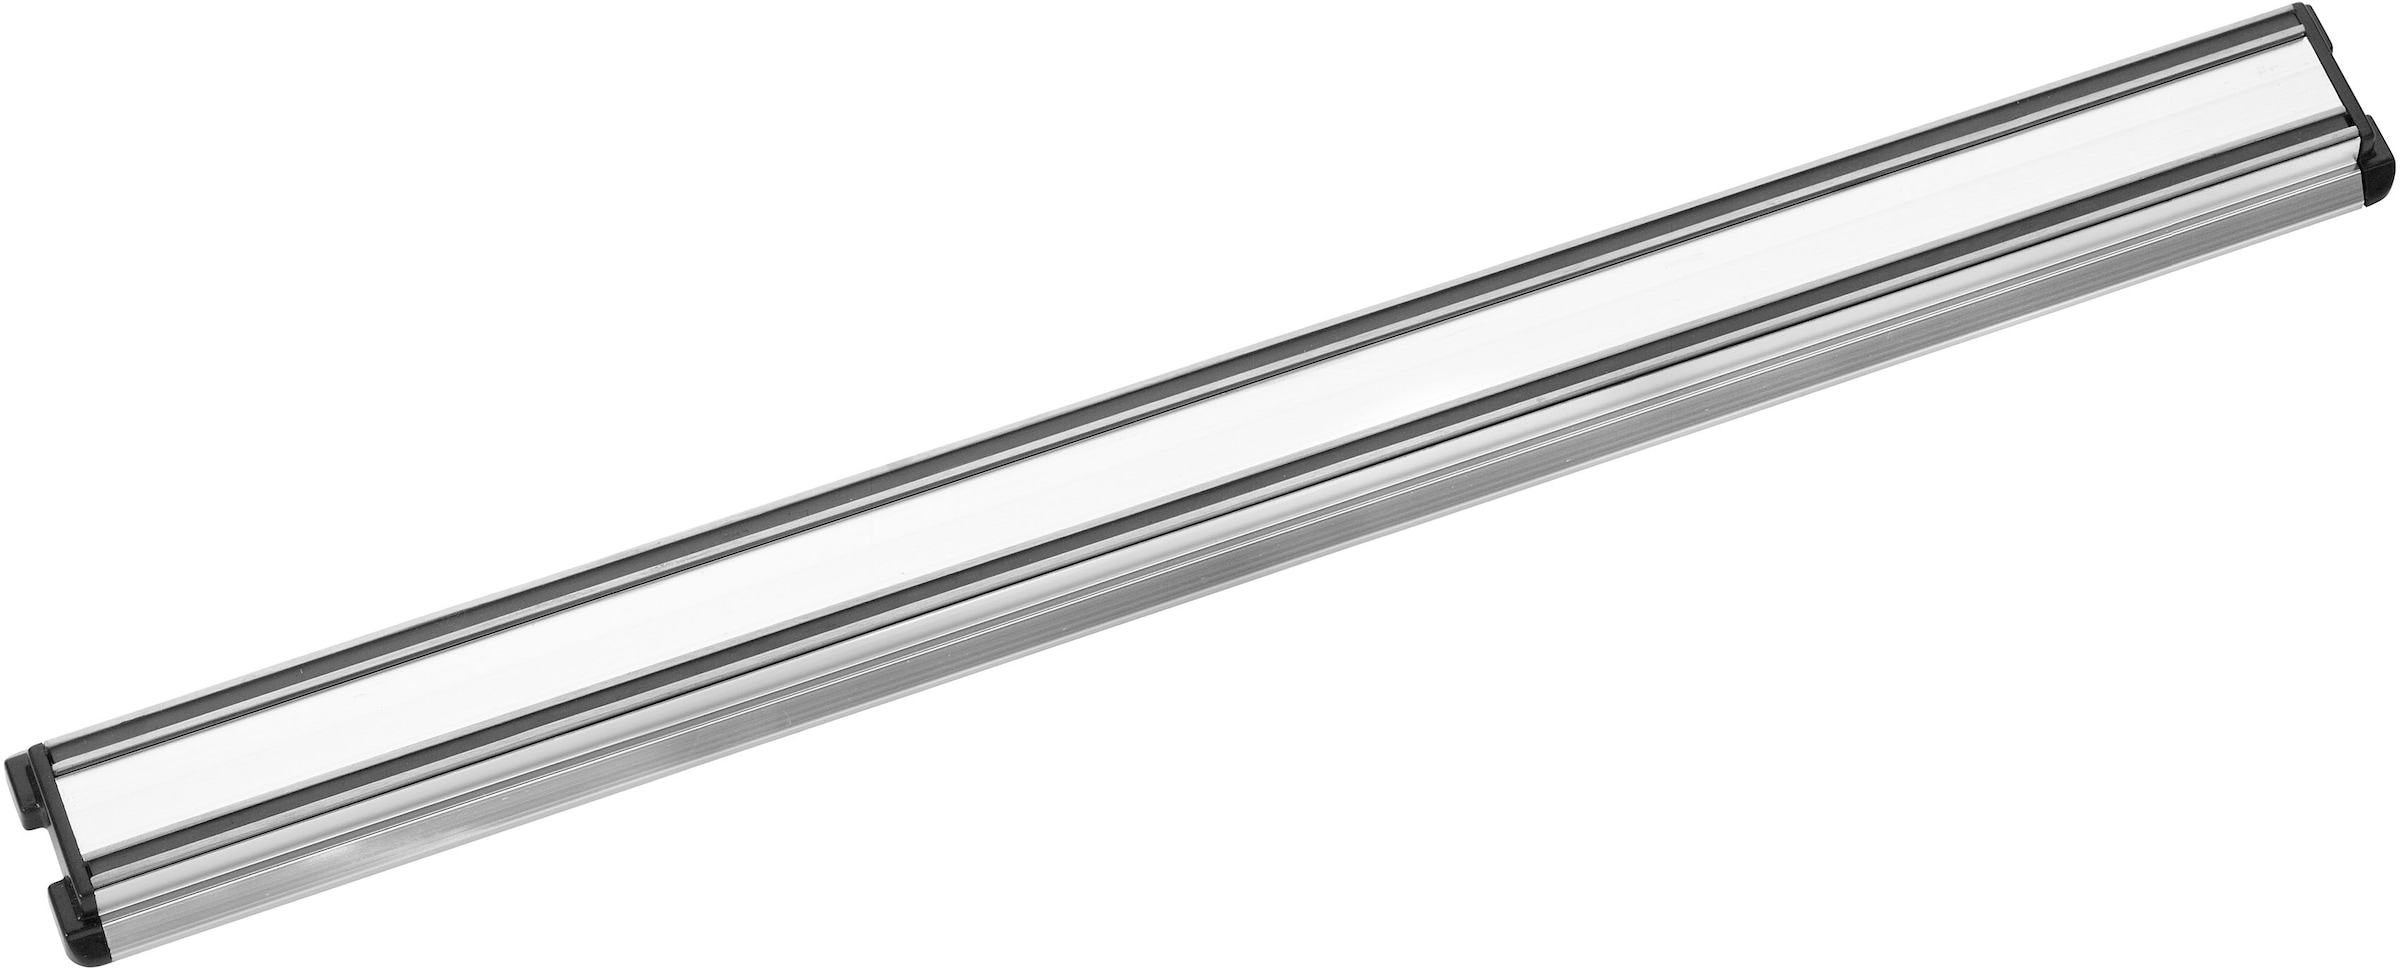 PINTINOX Wand-Magnet Messer-Leiste »Coltelli Professional«, 1 tlg., zum Aufhängen von Messern und Küchenhelfern